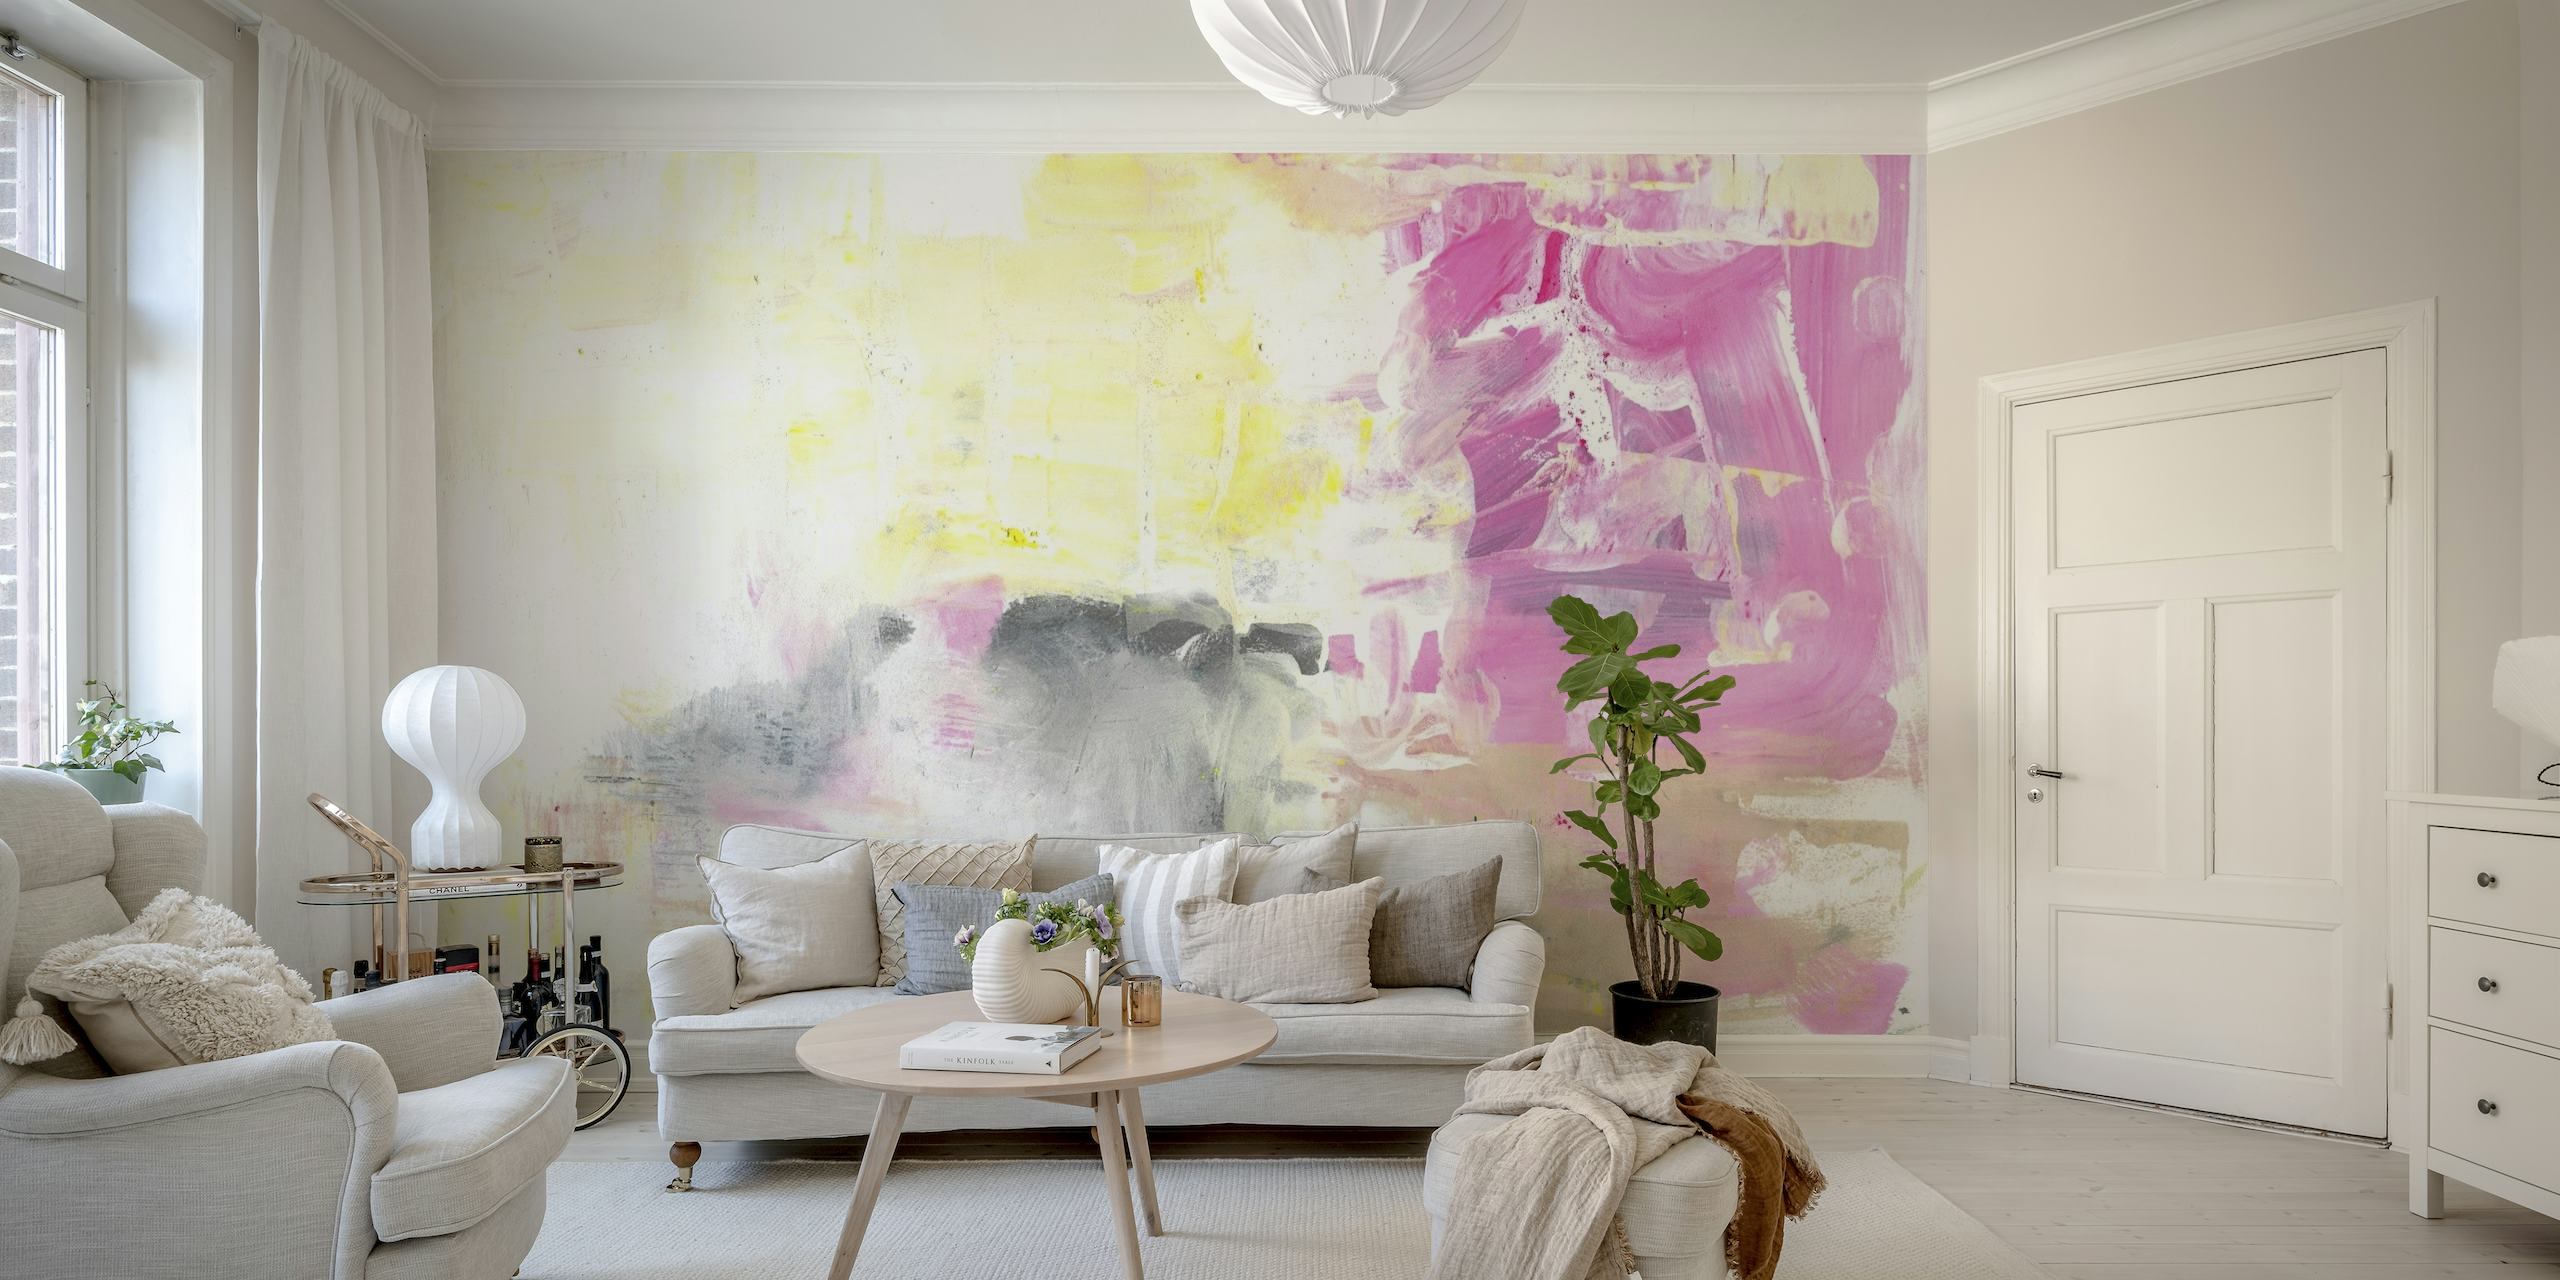 Abstrakt målning nr 17 tapet med mjuka rosa, gråa och vita toner med uttrycksfulla penseln